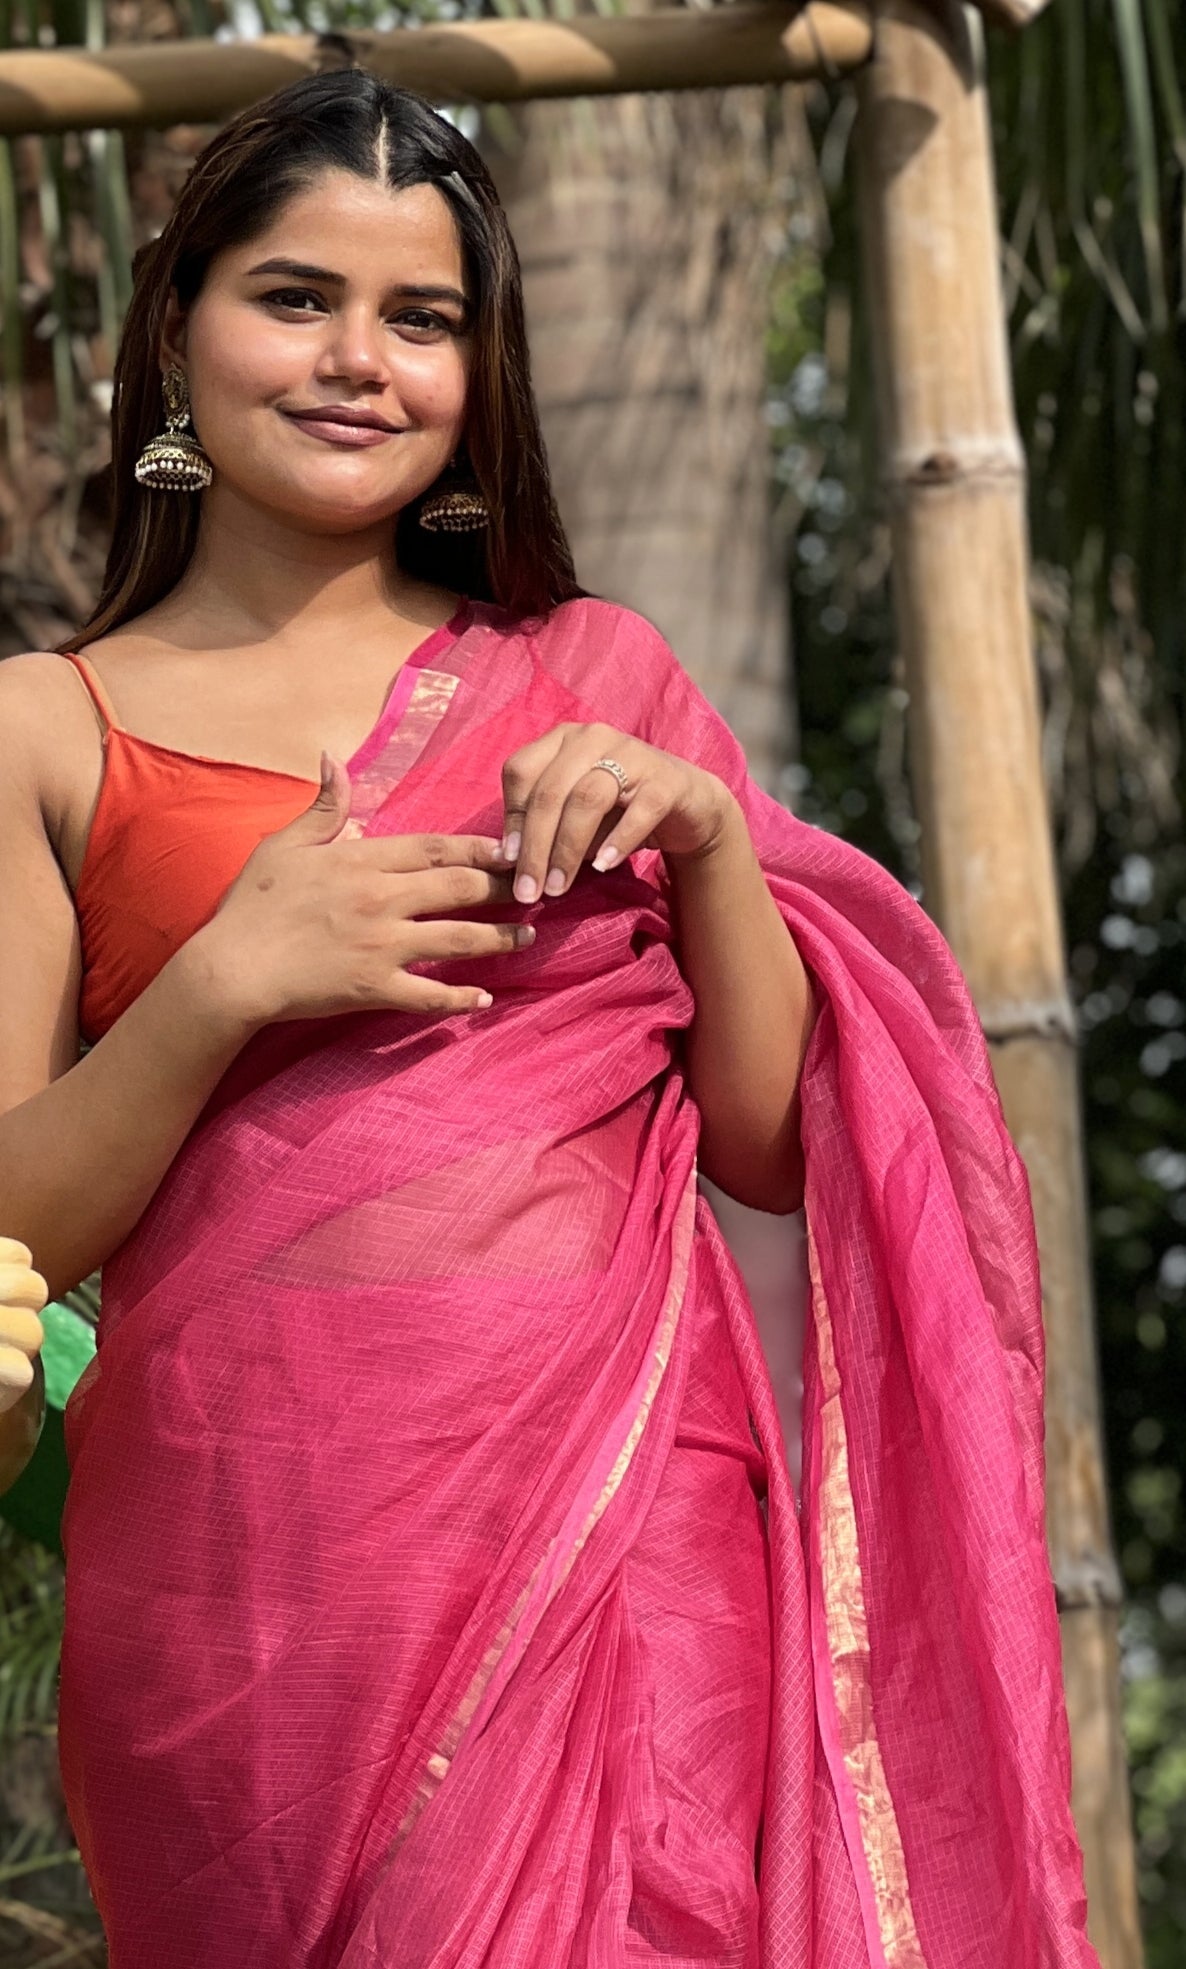 Kota Doria Pure Silk Pink Saree Hand Dyed with Blouse-Indiehaat